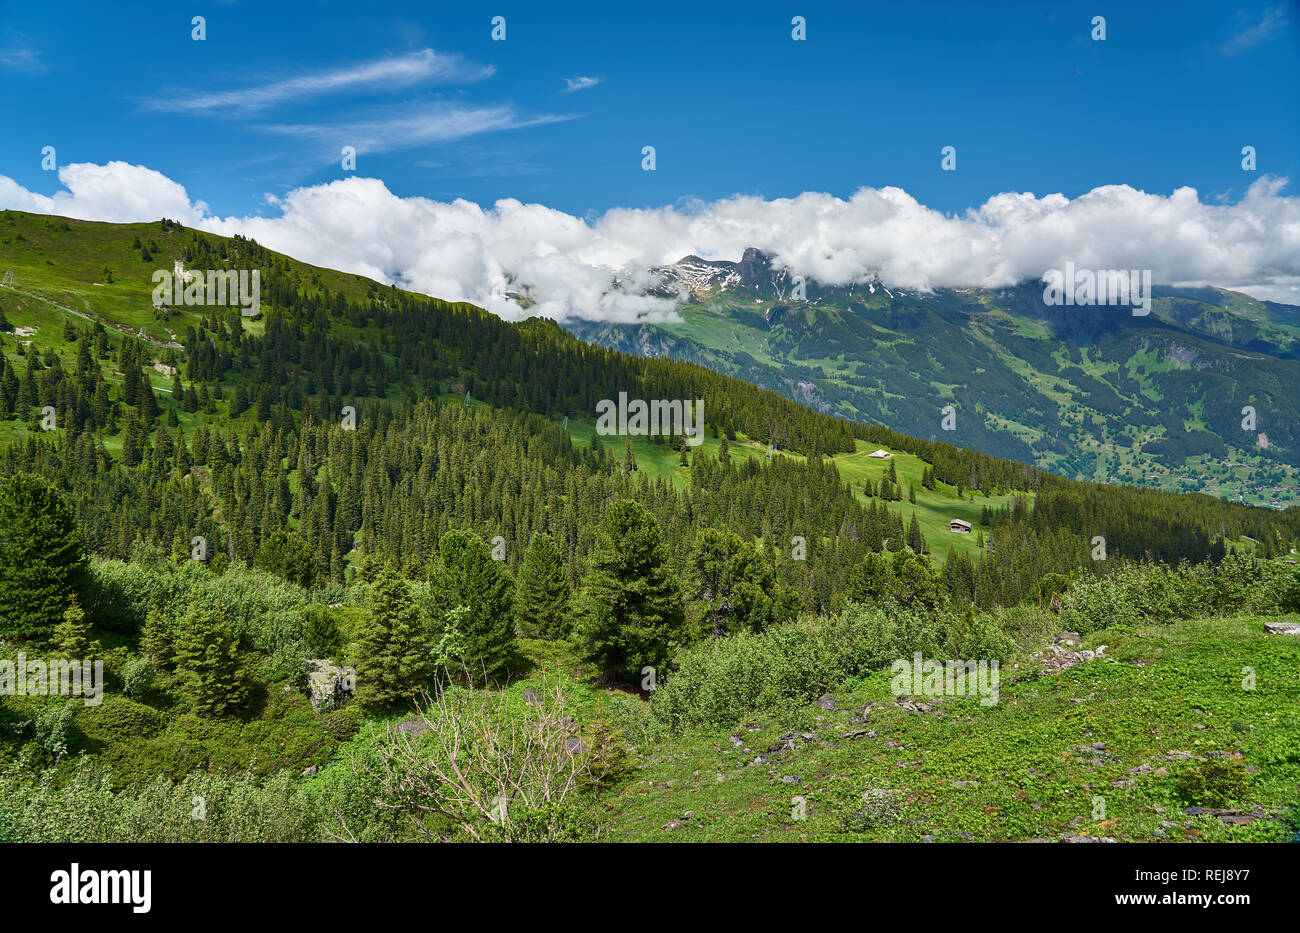 Schweizer Alpen Landschaft mit Wiese, schneebedeckten Bergen und grüner Natur. Aufgenommen in den Bergen von Grindelwald, Mannlichen - Alpiglen Trail, Schweiz. Stockfoto